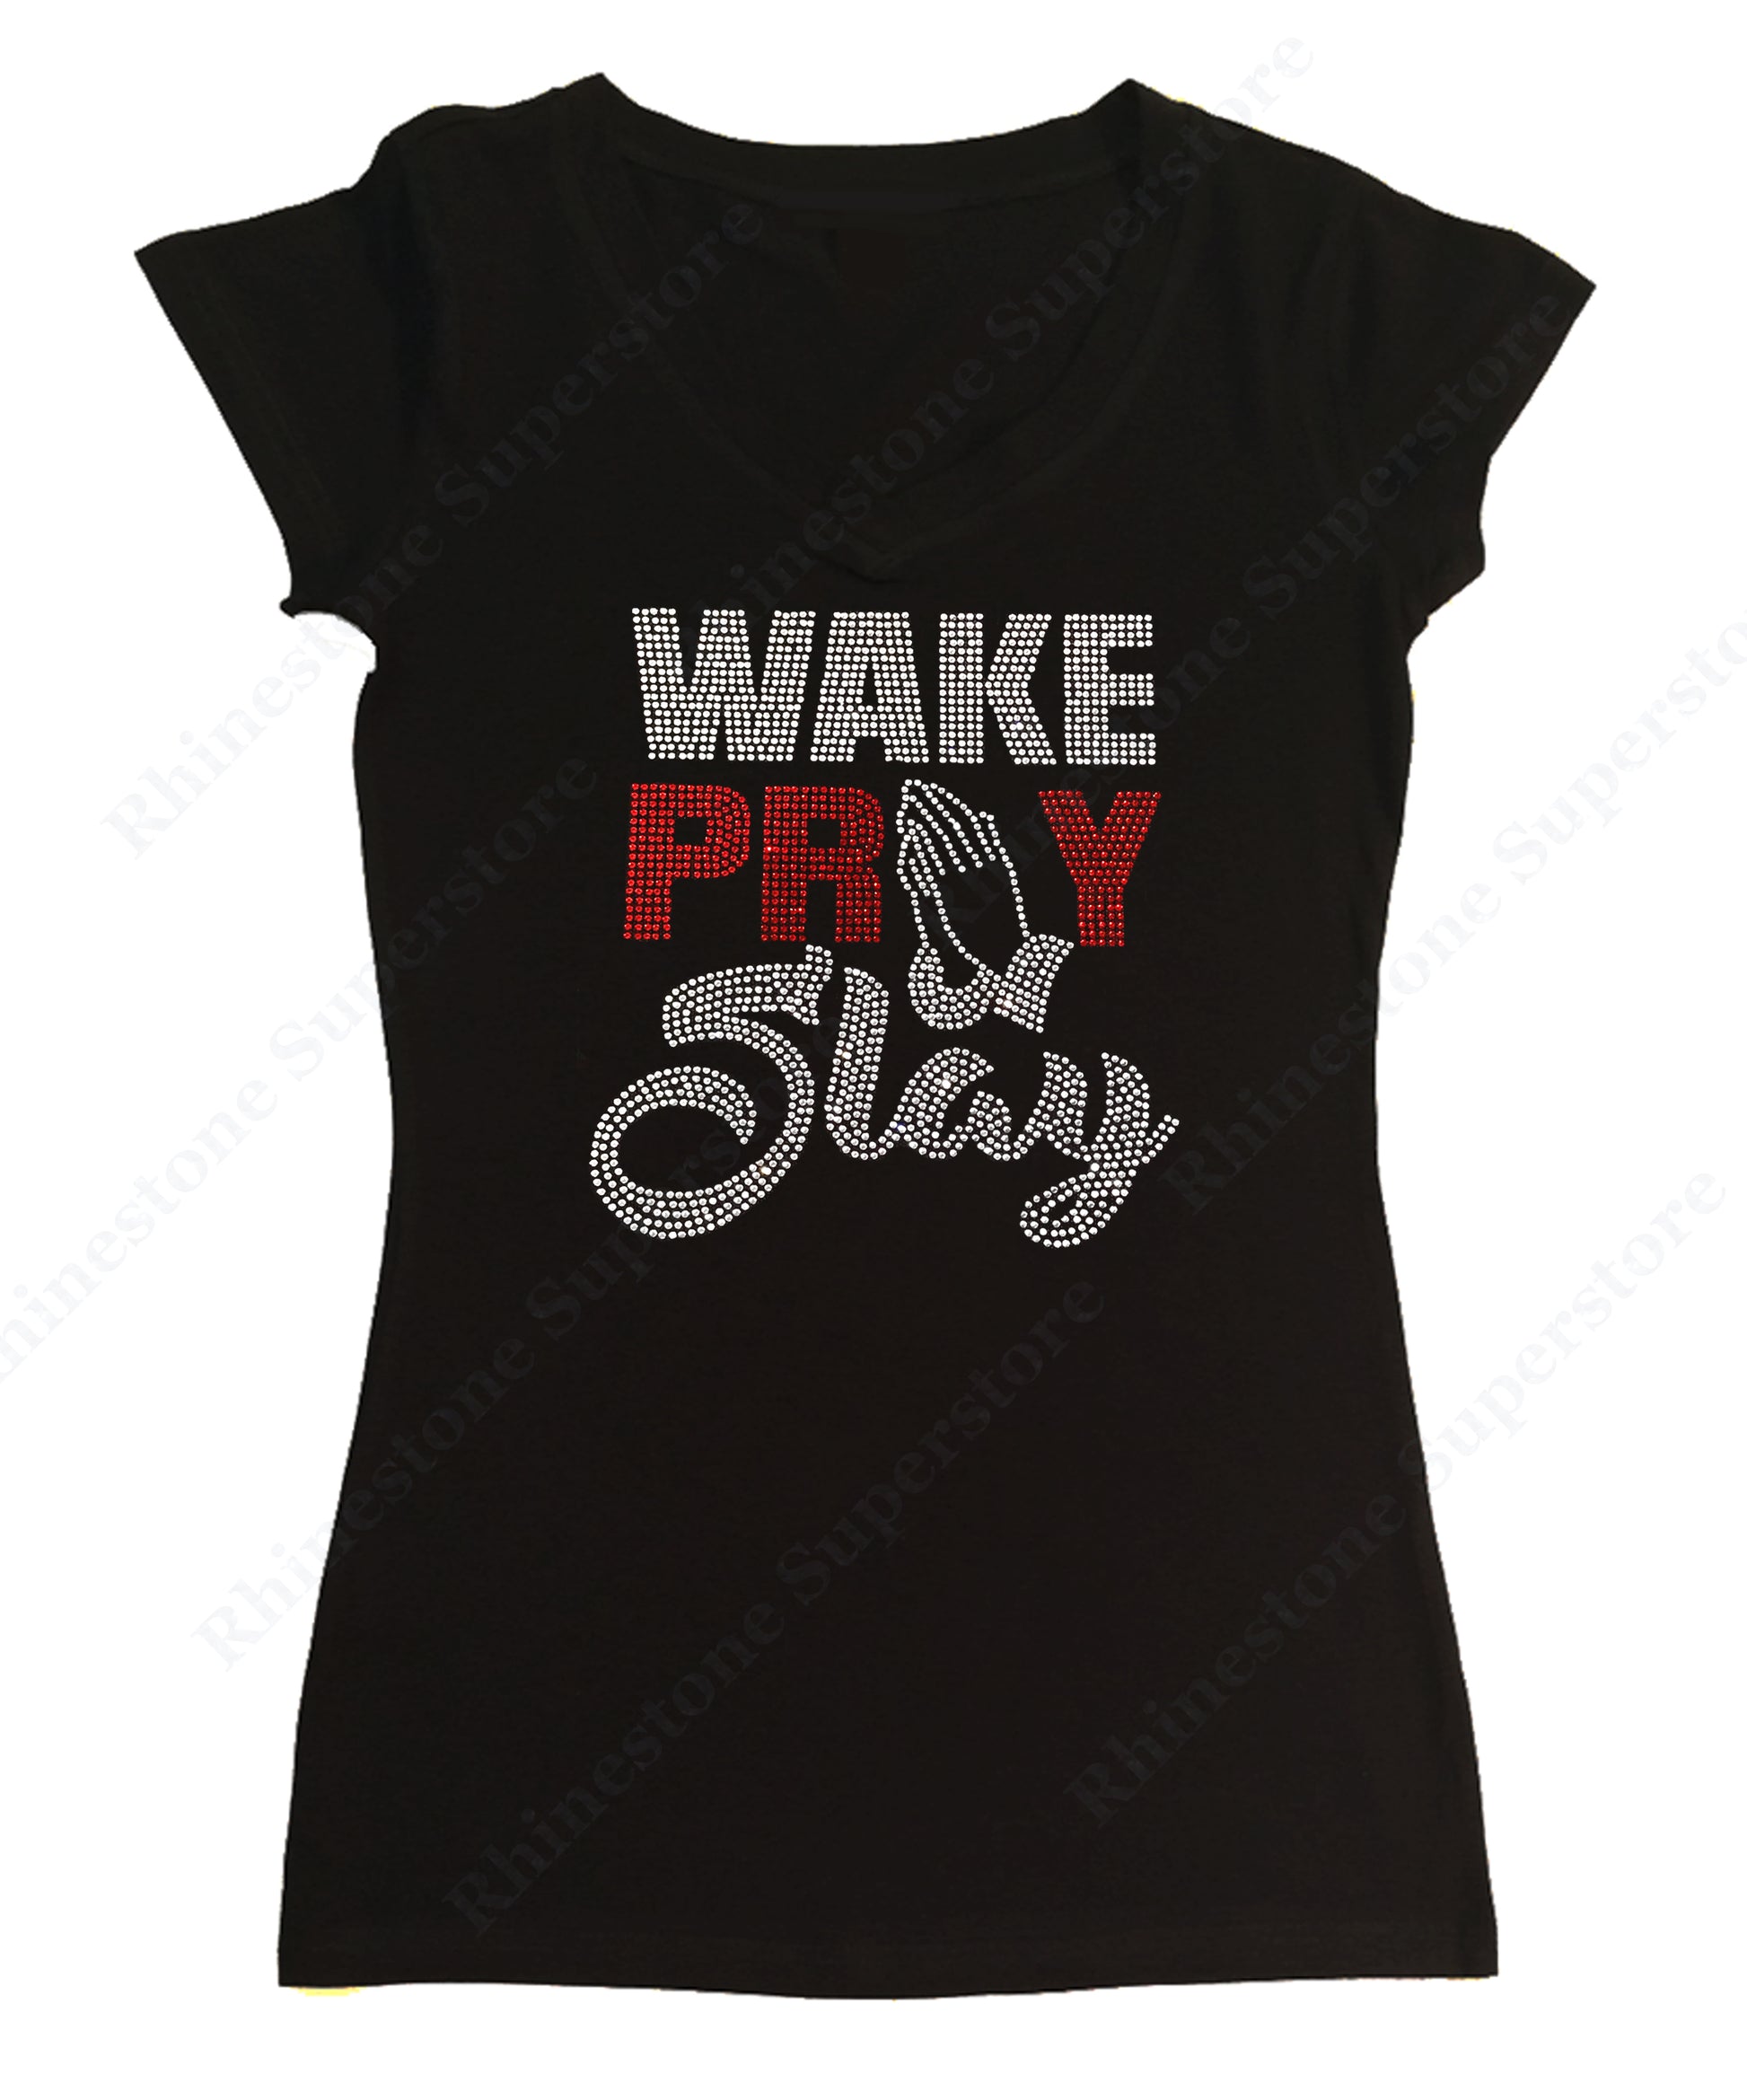 Womens T-shirt with Wake Pray Slay in Rhinestones